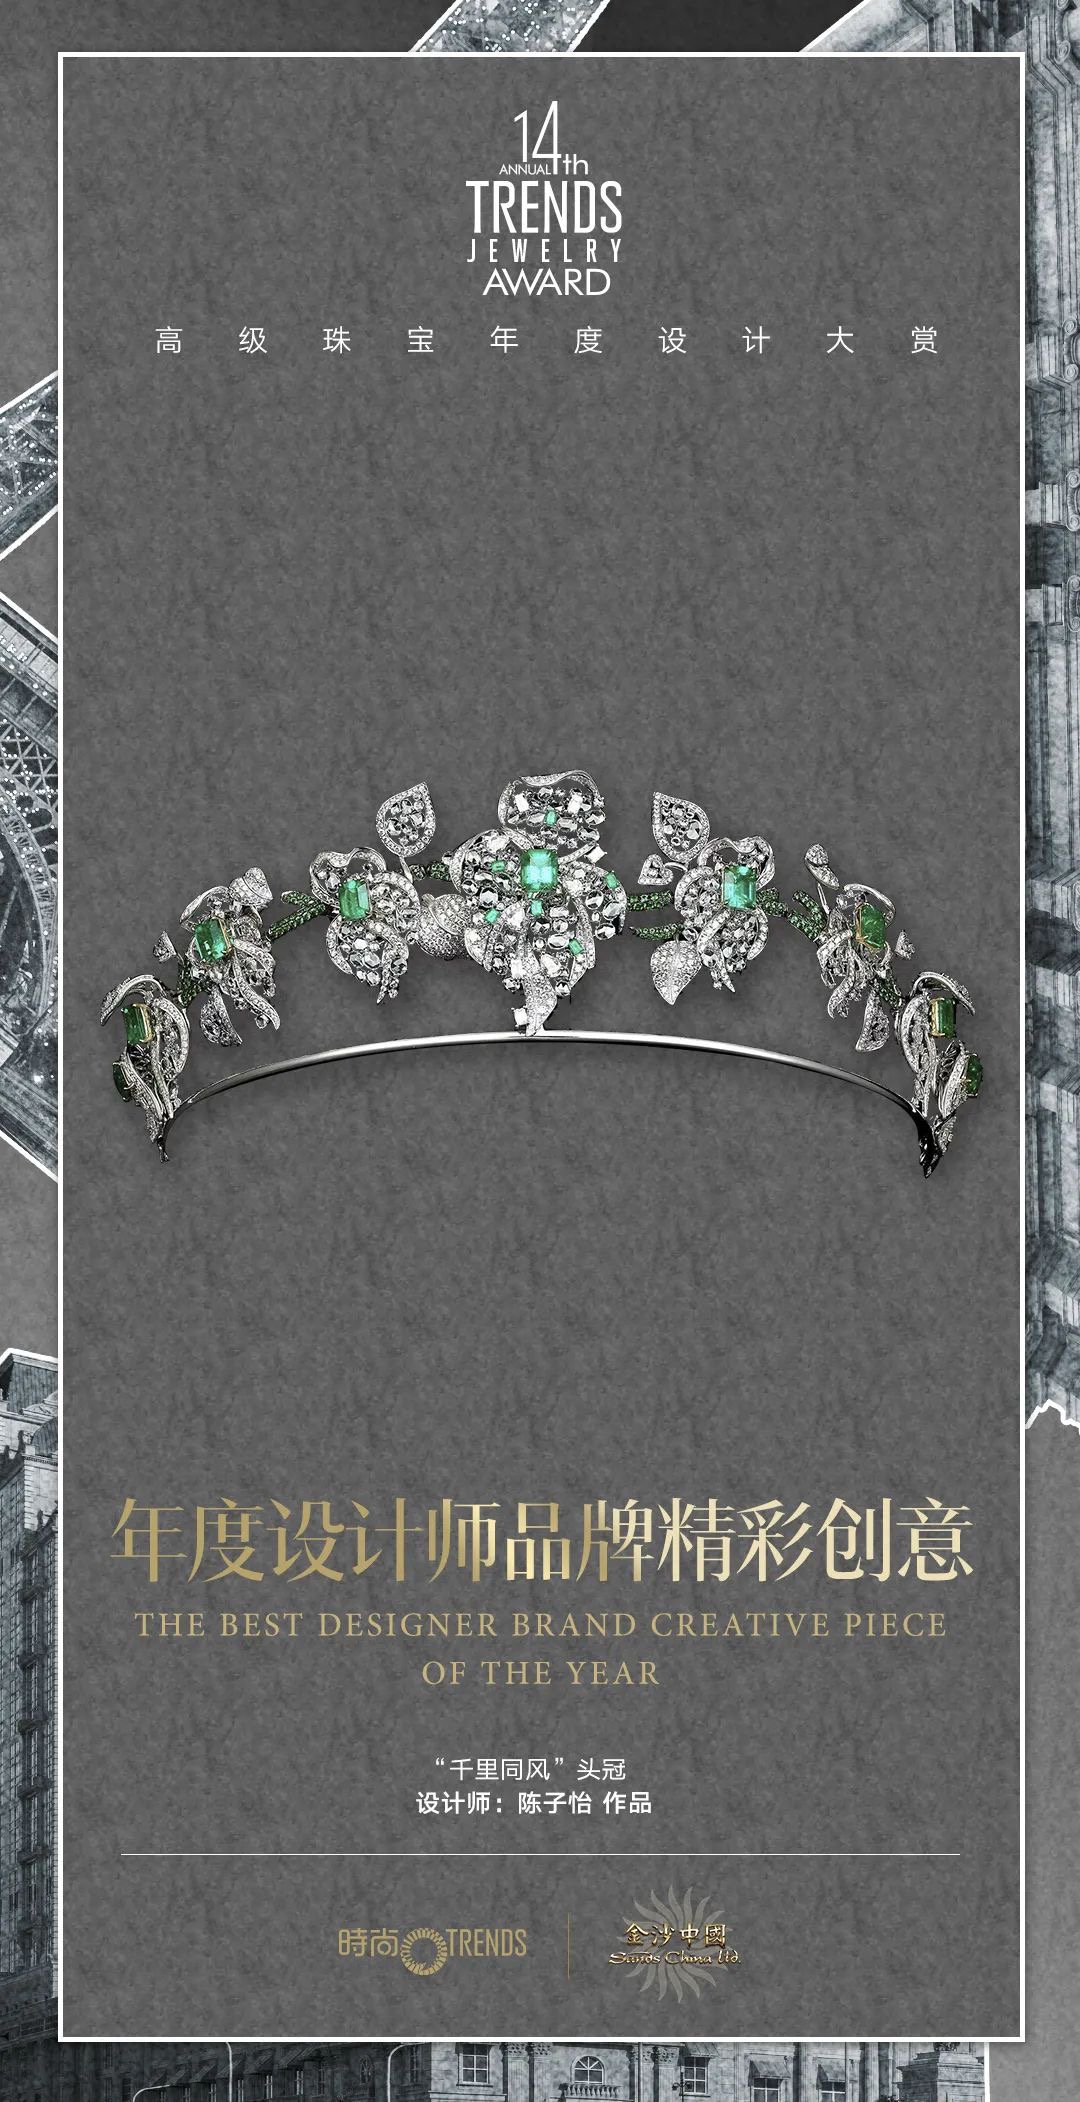 贞元珠宝荣获《芭莎珠宝》年度设计师品牌精彩创意奖(图5)